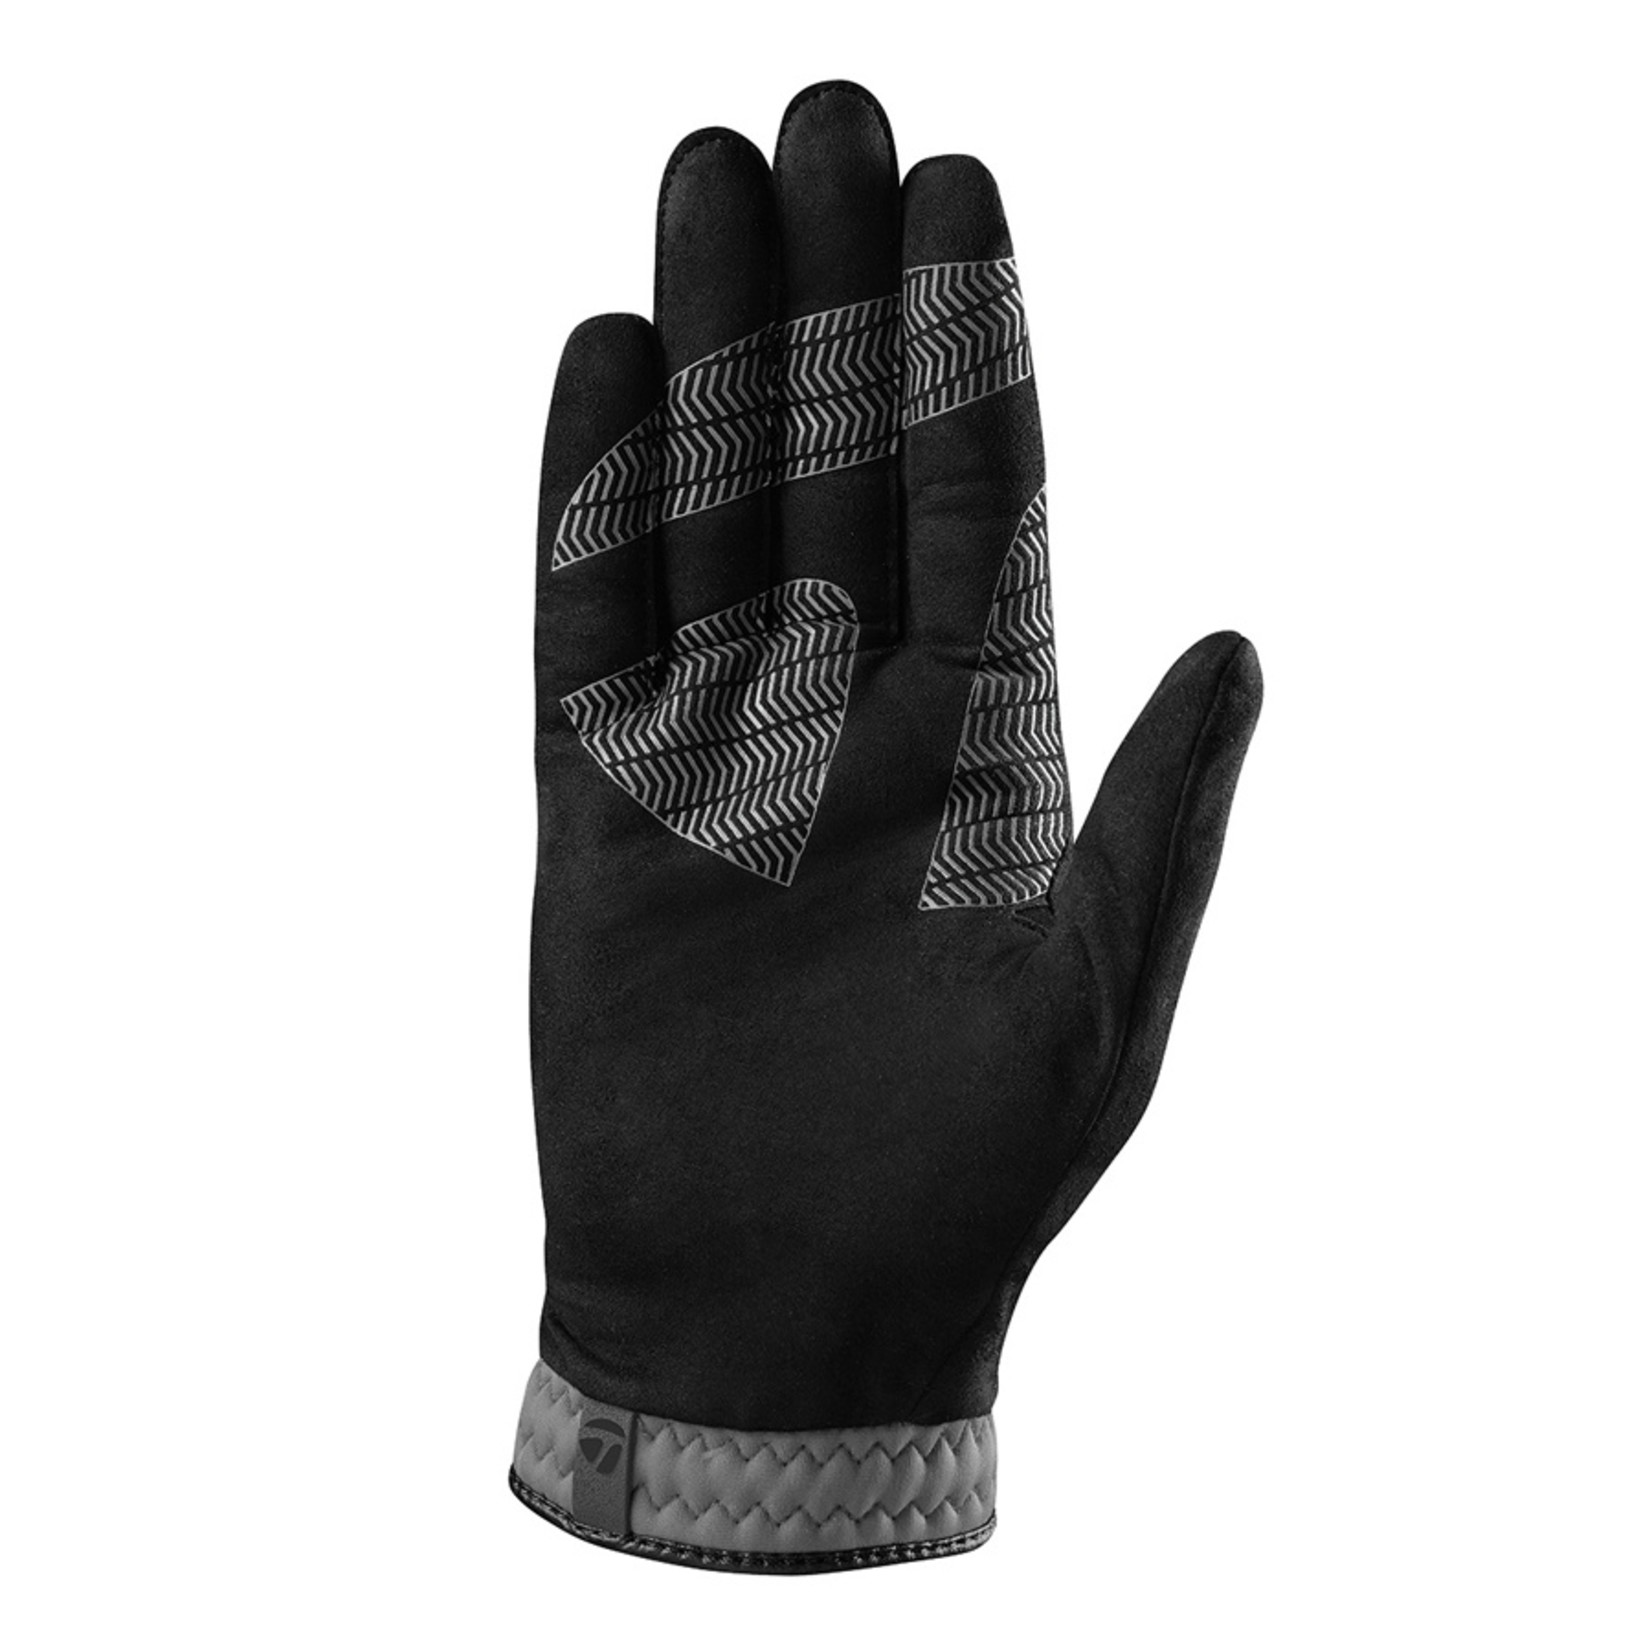 TaylorMade Rain Control Glove